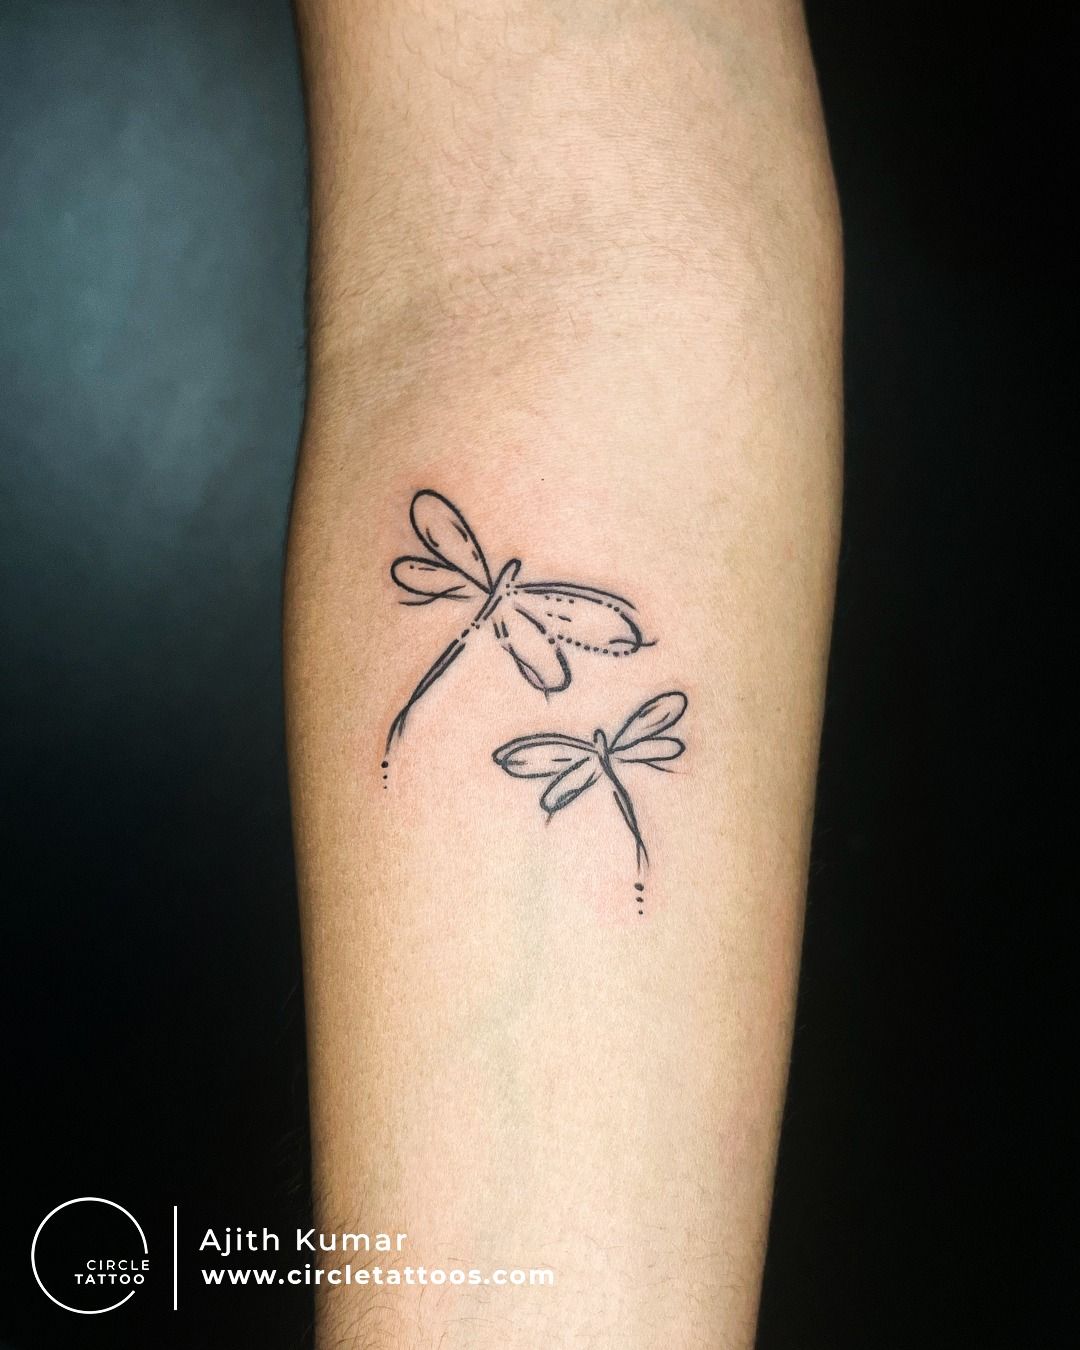 Tattoo Shader - Mani Name tattoo, Tattoo by Rj Rajesh at Tattooshader.  www.tattooshader.wix.com/chennai - #Letter #tattooshader #intenze | Facebook